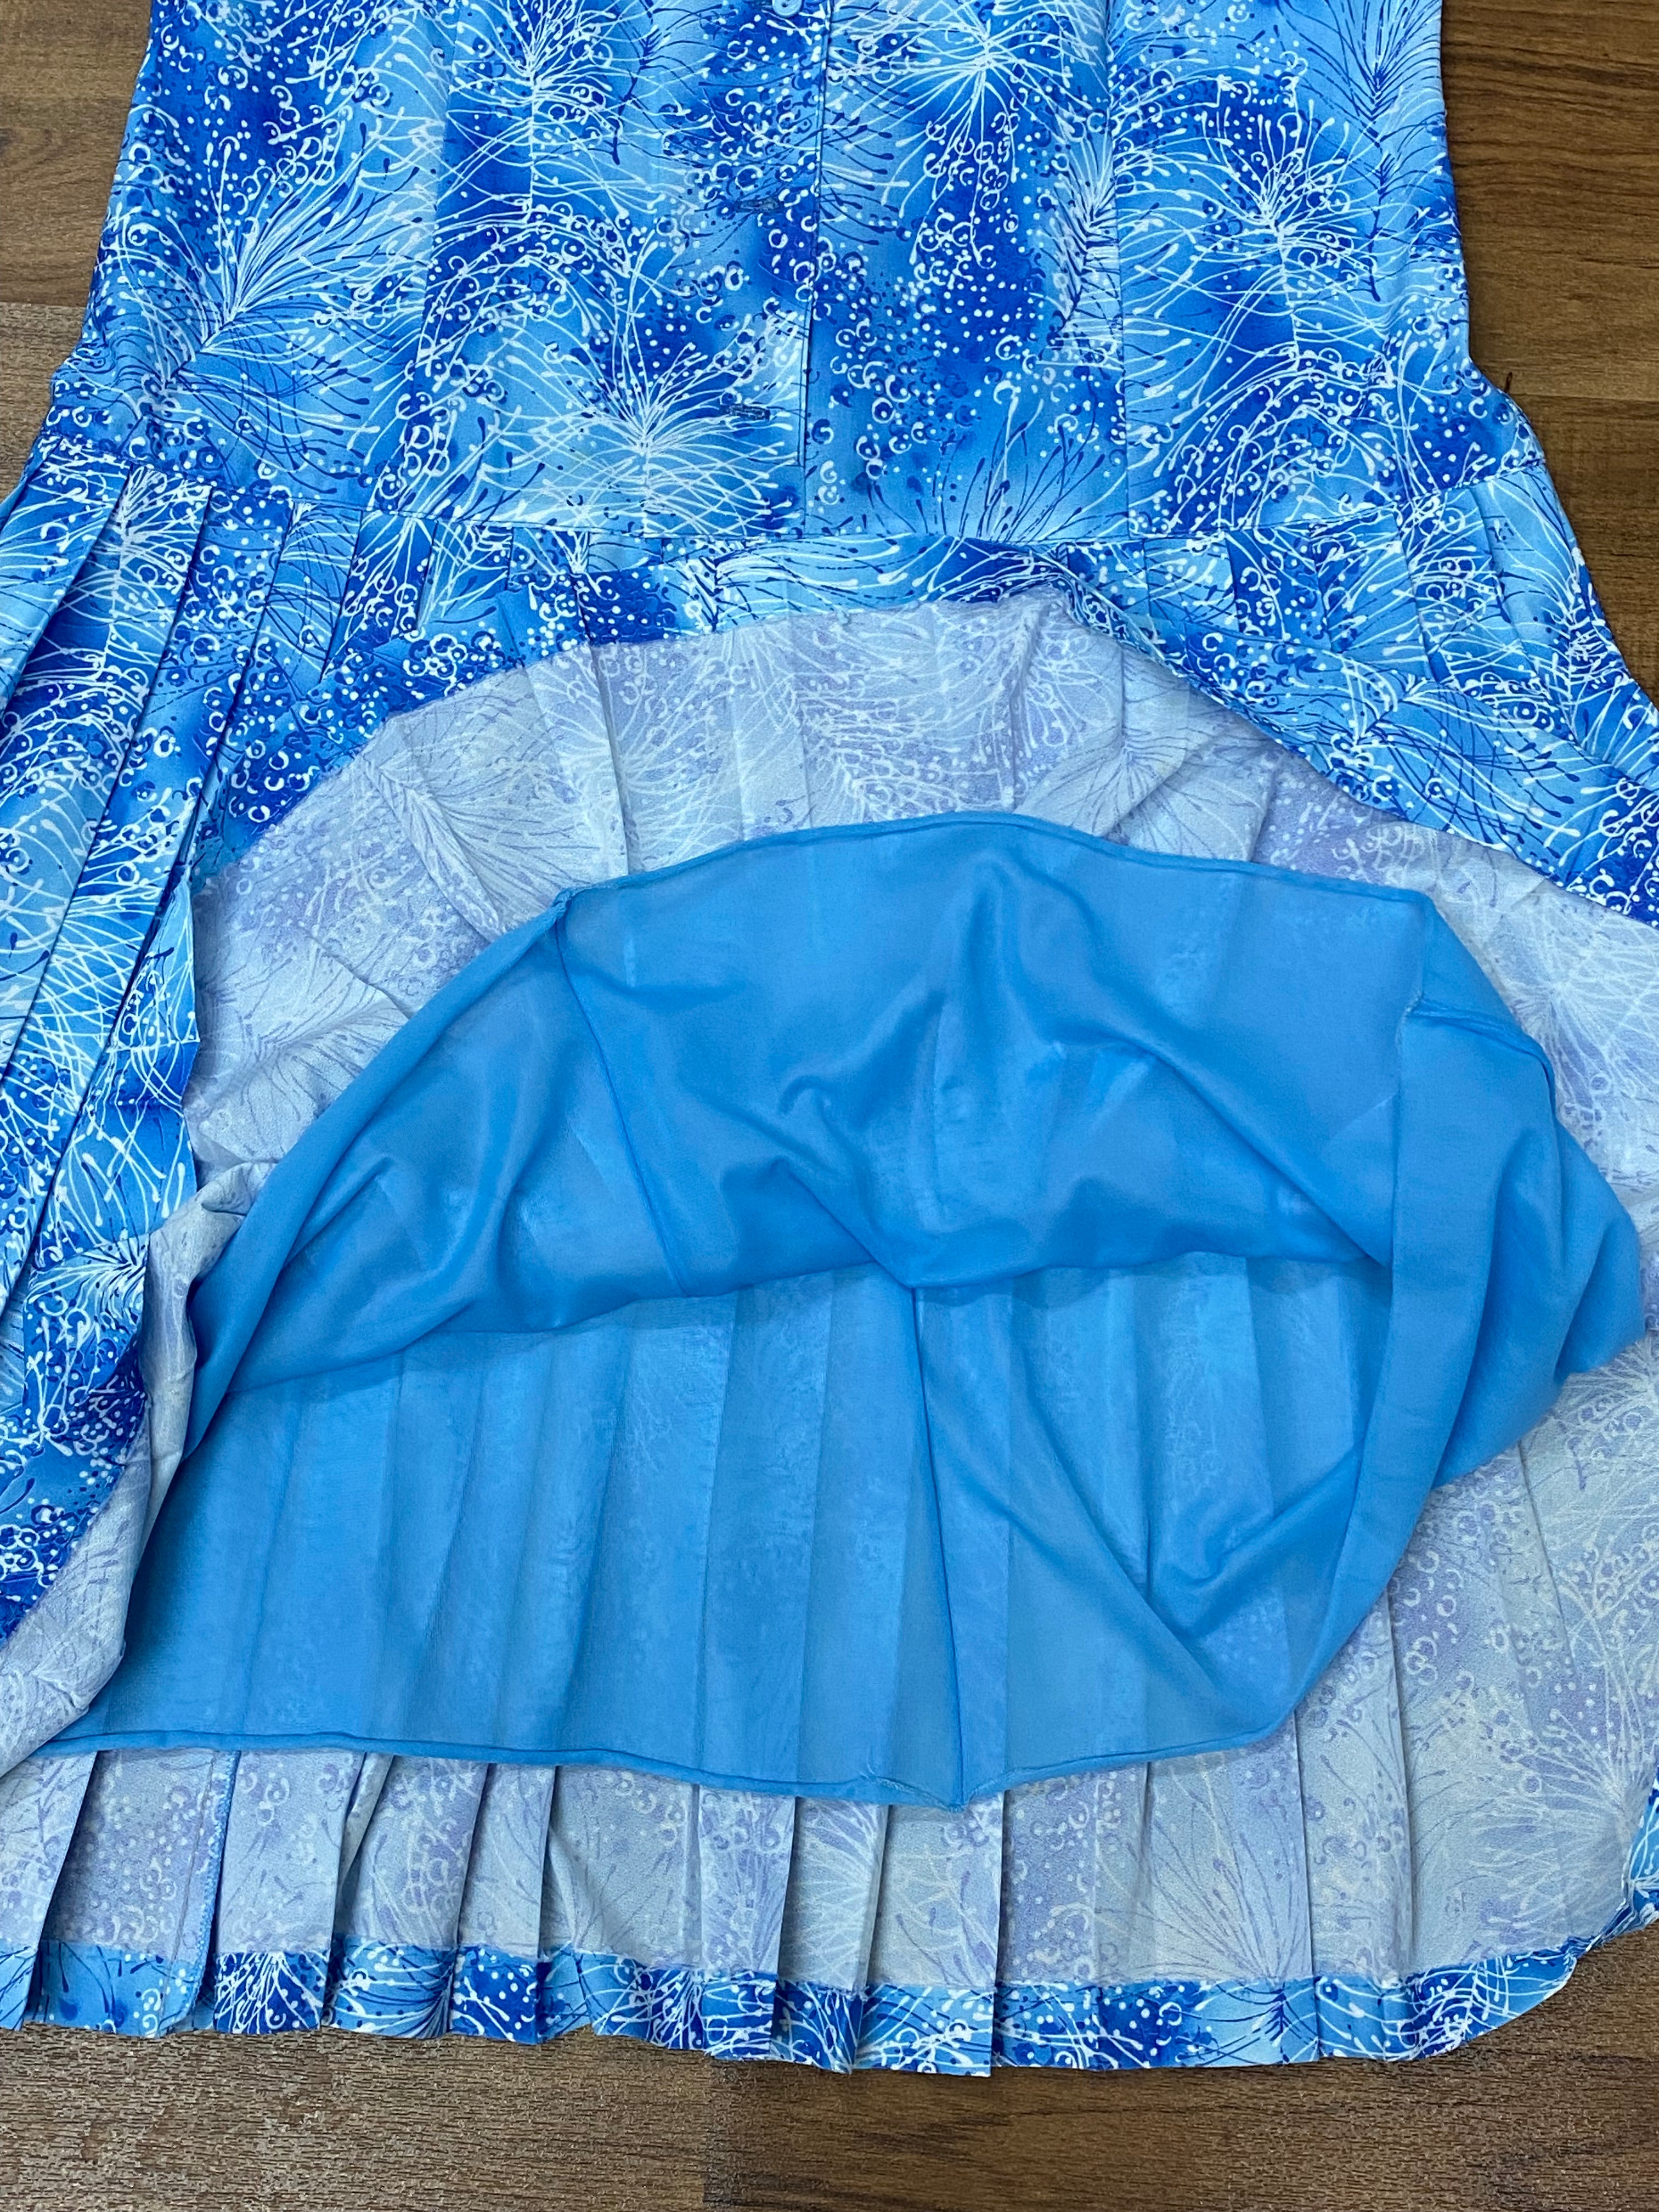 Hellblaues Vintage-Kleid mit tiefer Taille und Falten, Gr.48